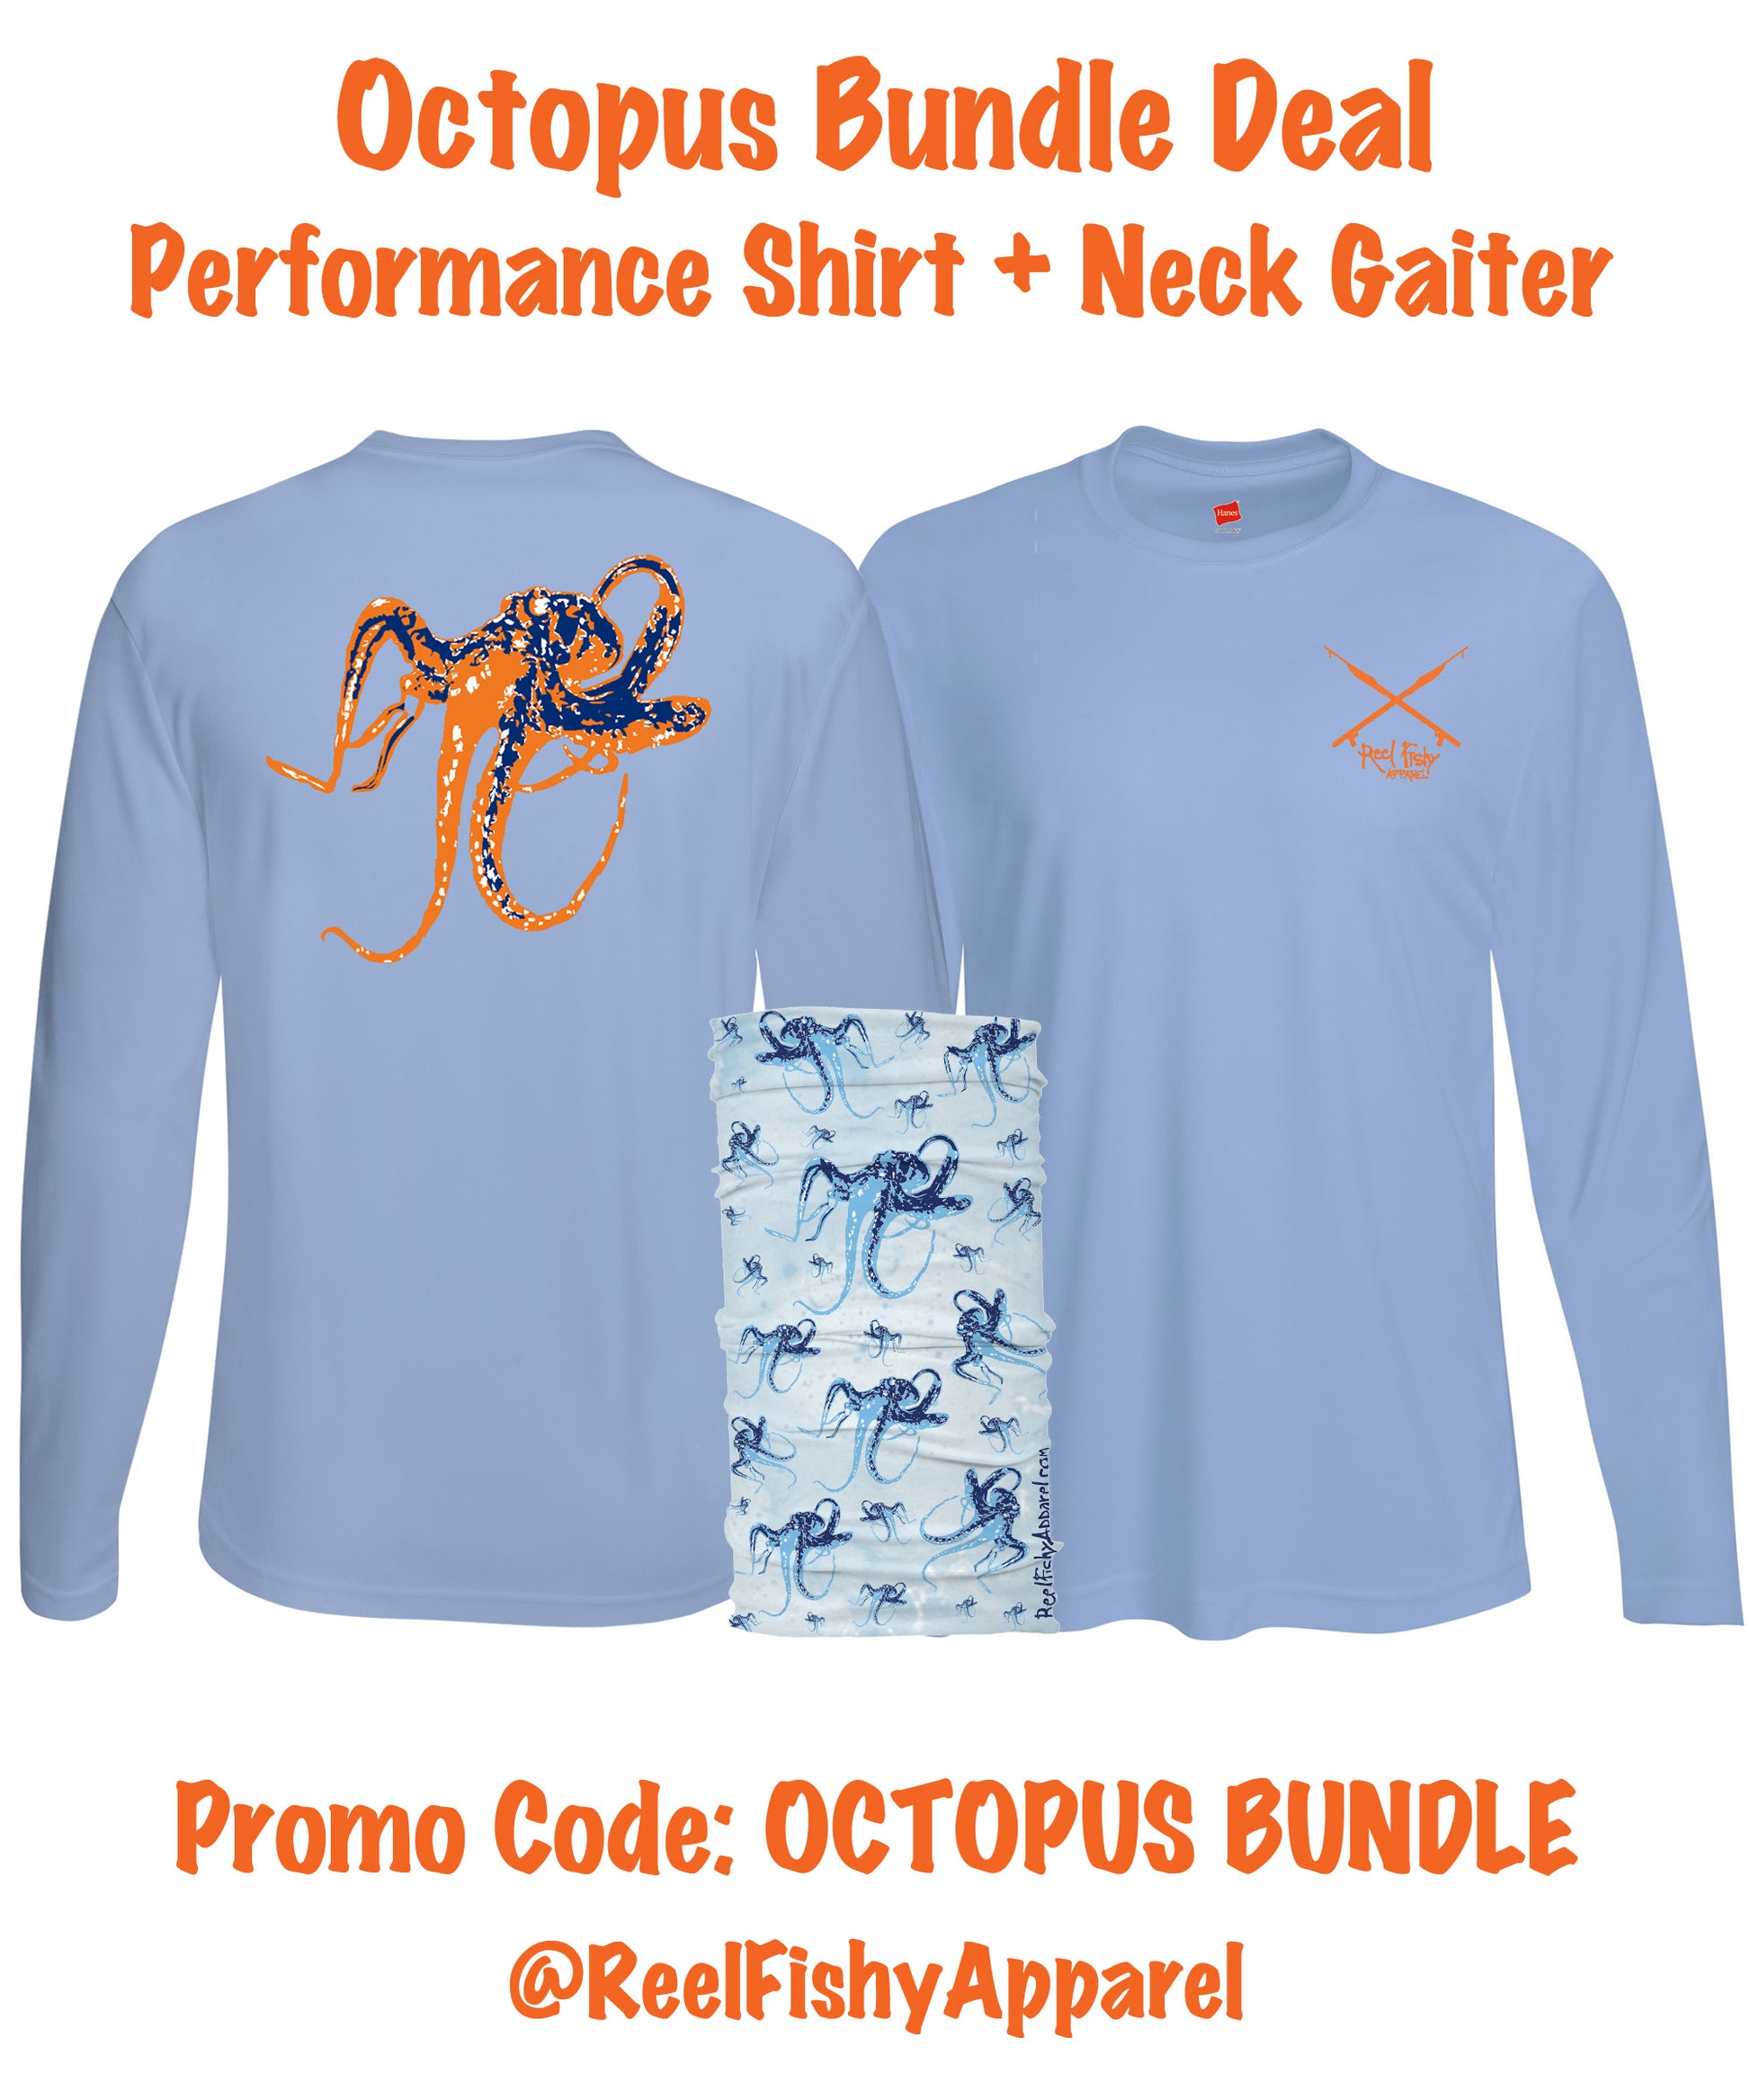 Octopus Bundle Deal!  Performance shirt + neck gaiter